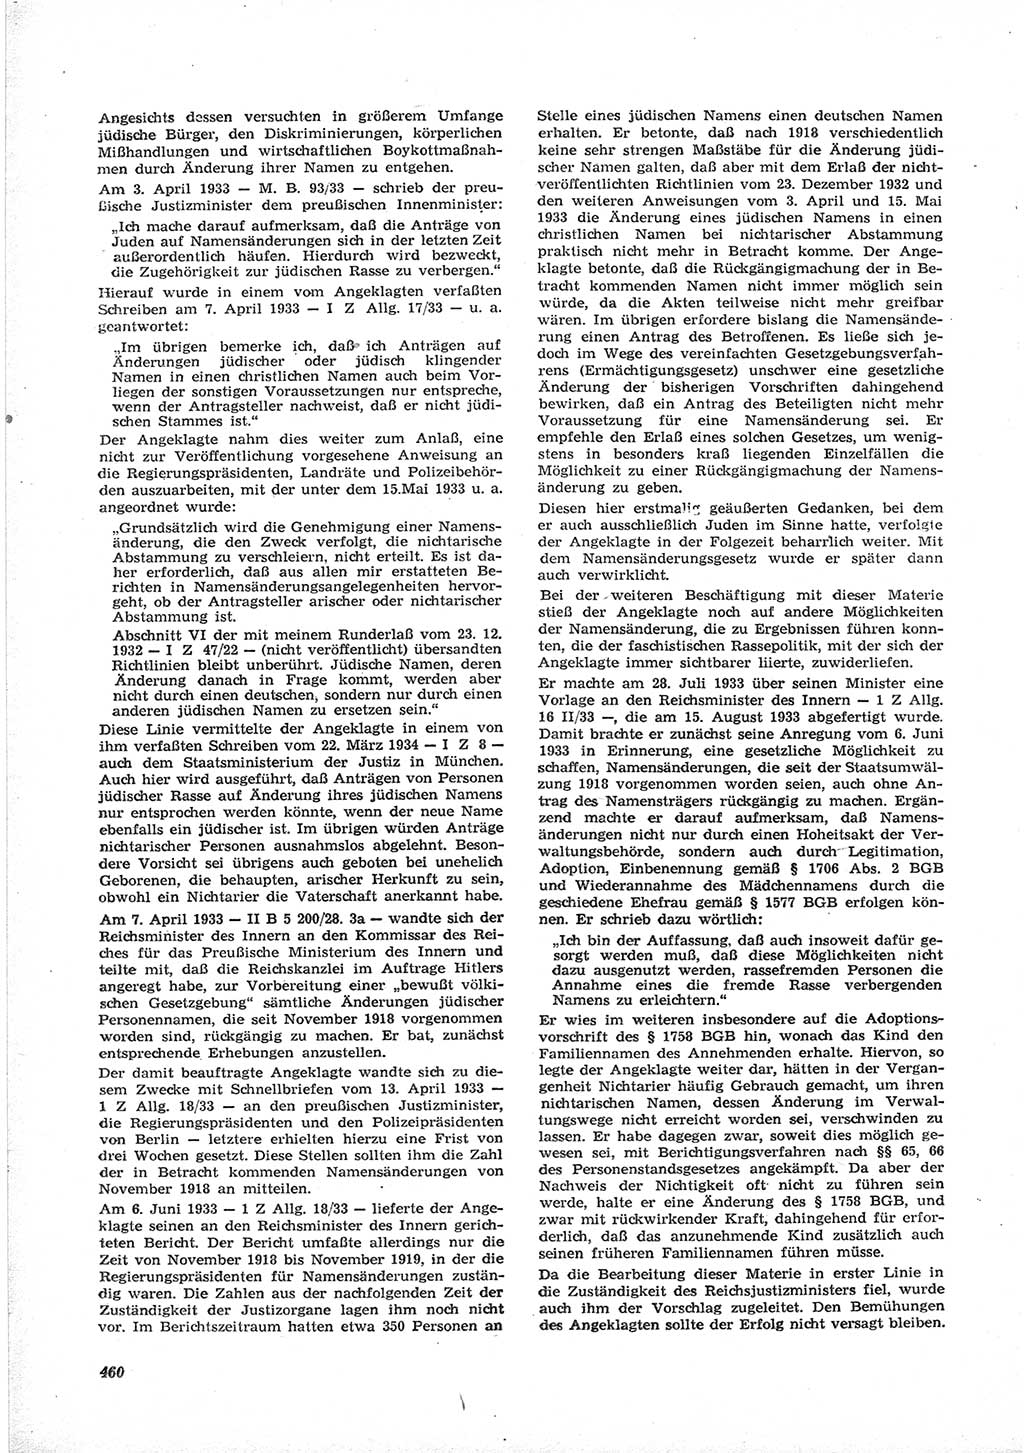 Neue Justiz (NJ), Zeitschrift für Recht und Rechtswissenschaft [Deutsche Demokratische Republik (DDR)], 17. Jahrgang 1963, Seite 460 (NJ DDR 1963, S. 460)